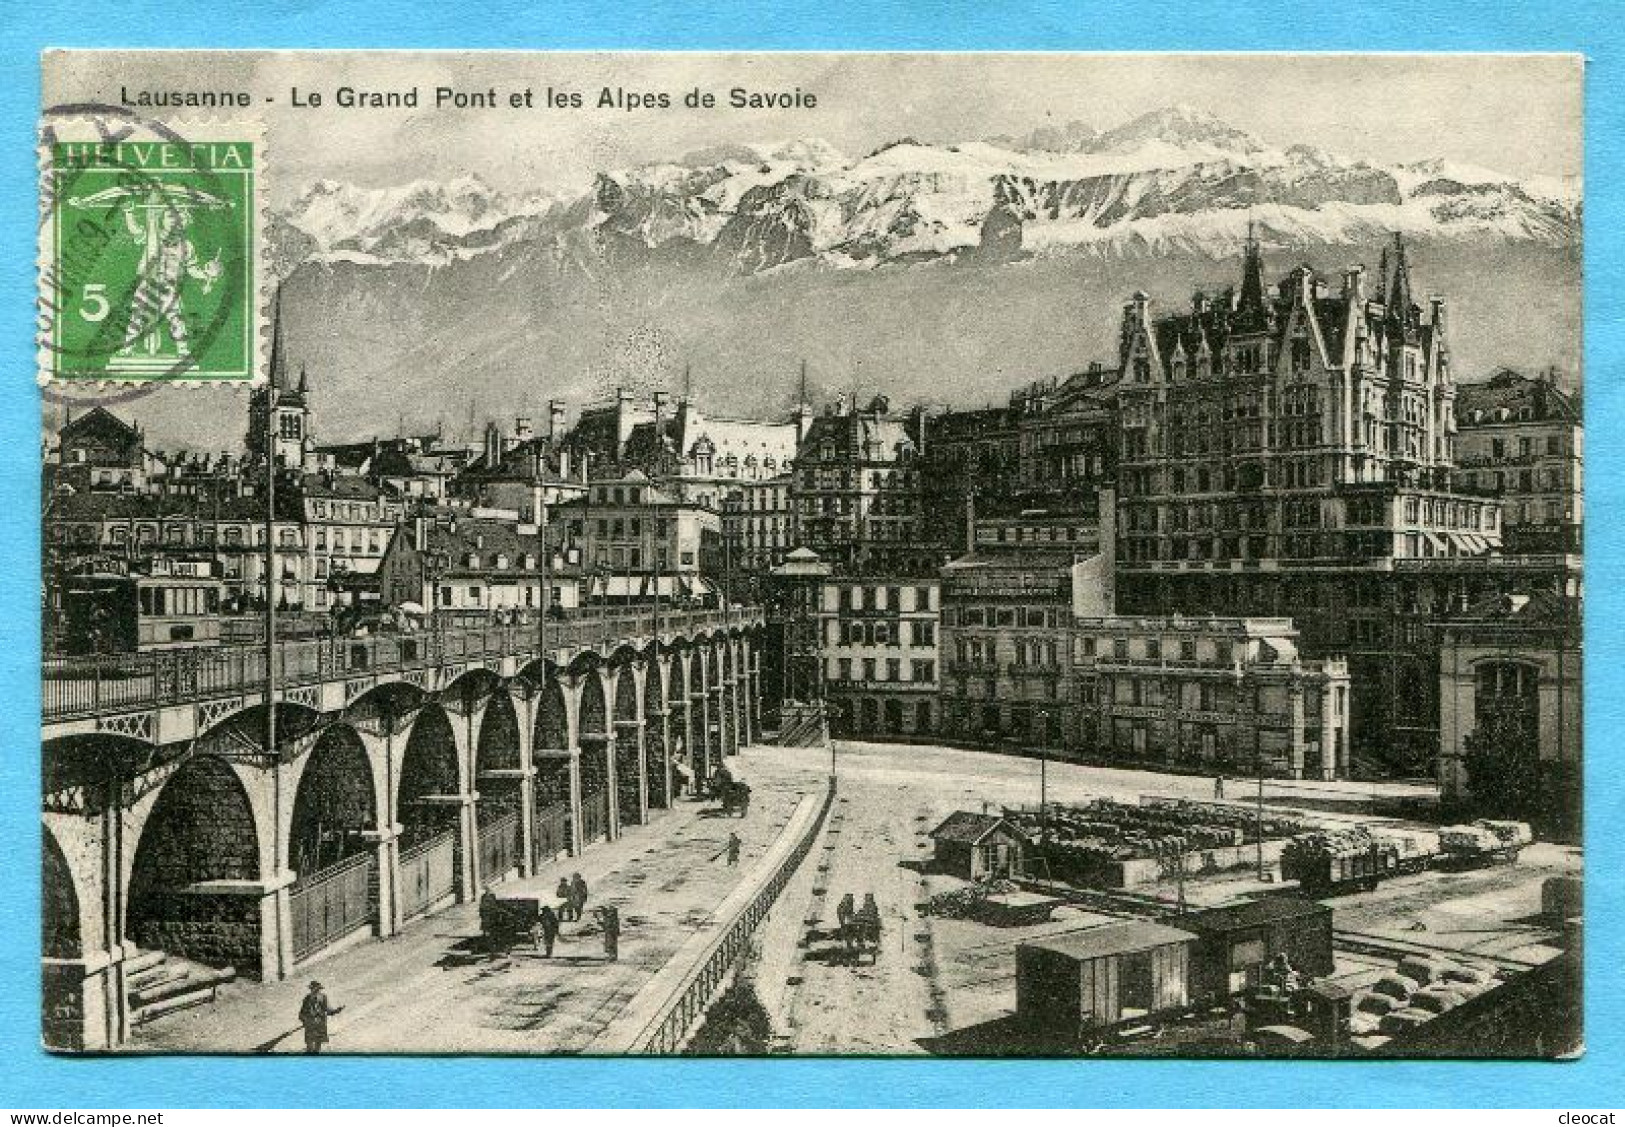 Lausanne 1909 - Le Grand Post - Lausanne